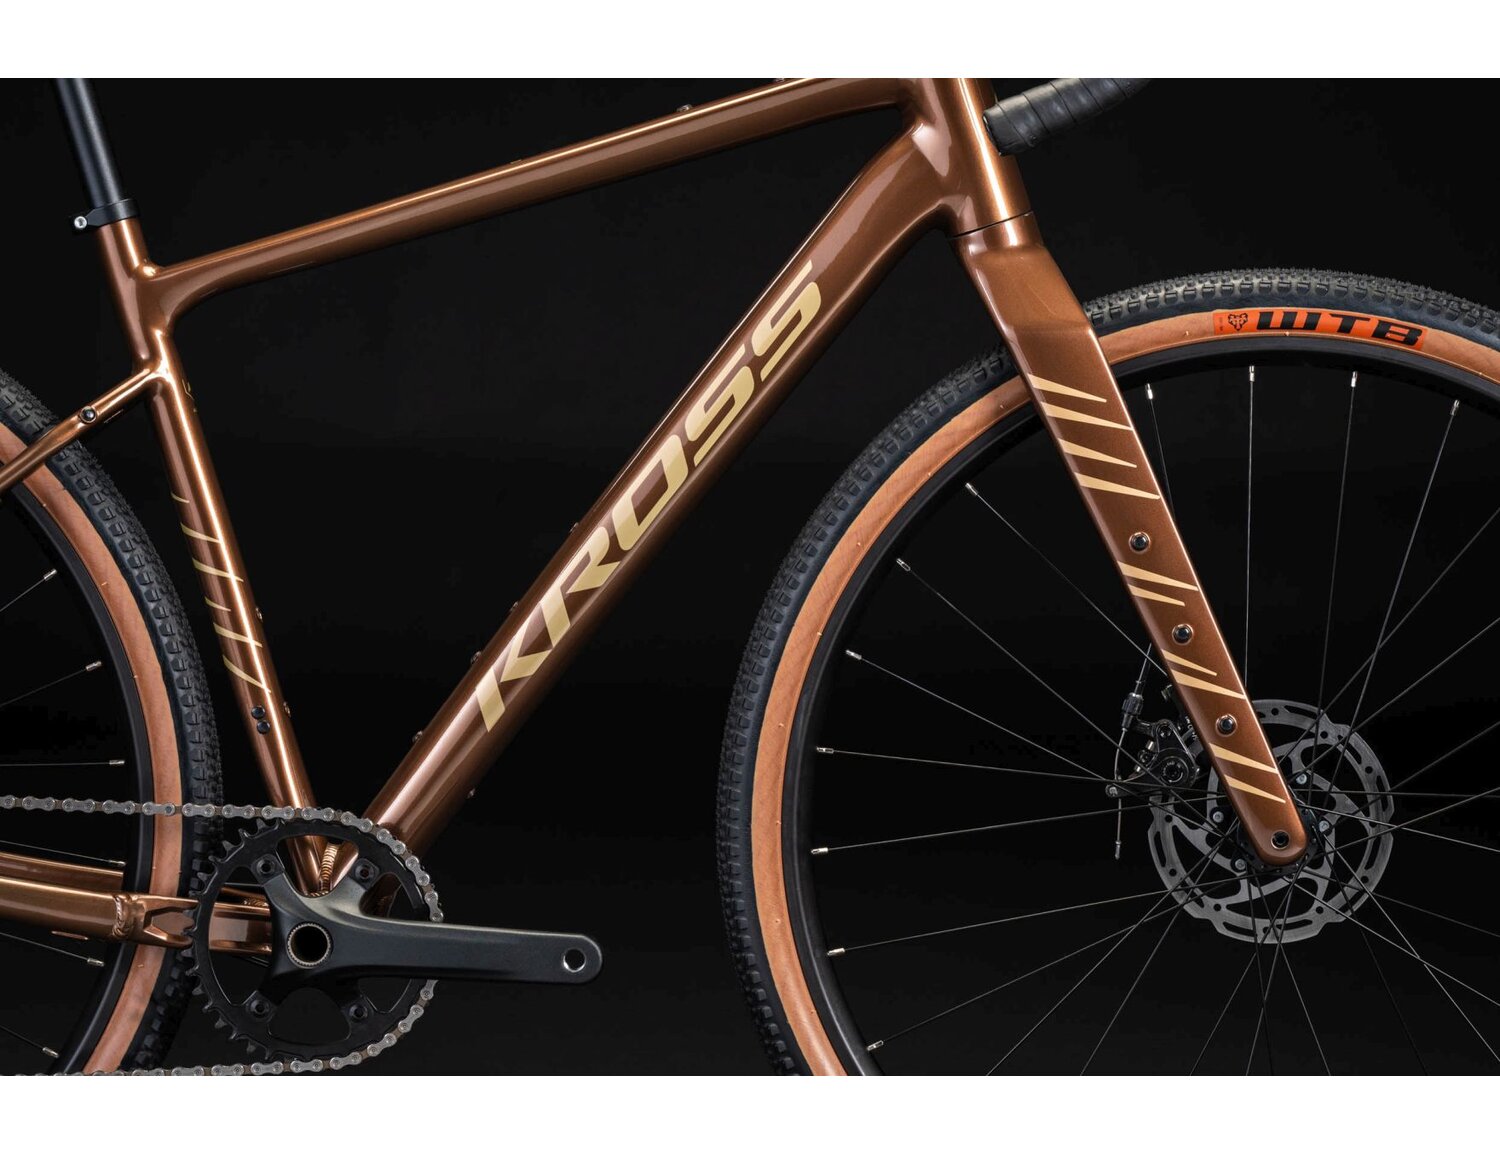  Rama aluminiowa nowej generacji gen2 w kolorze brązowym oraz carbonowy widelec z otworami montażowymi w rowerze gravelowym Kross Esker 2.0 